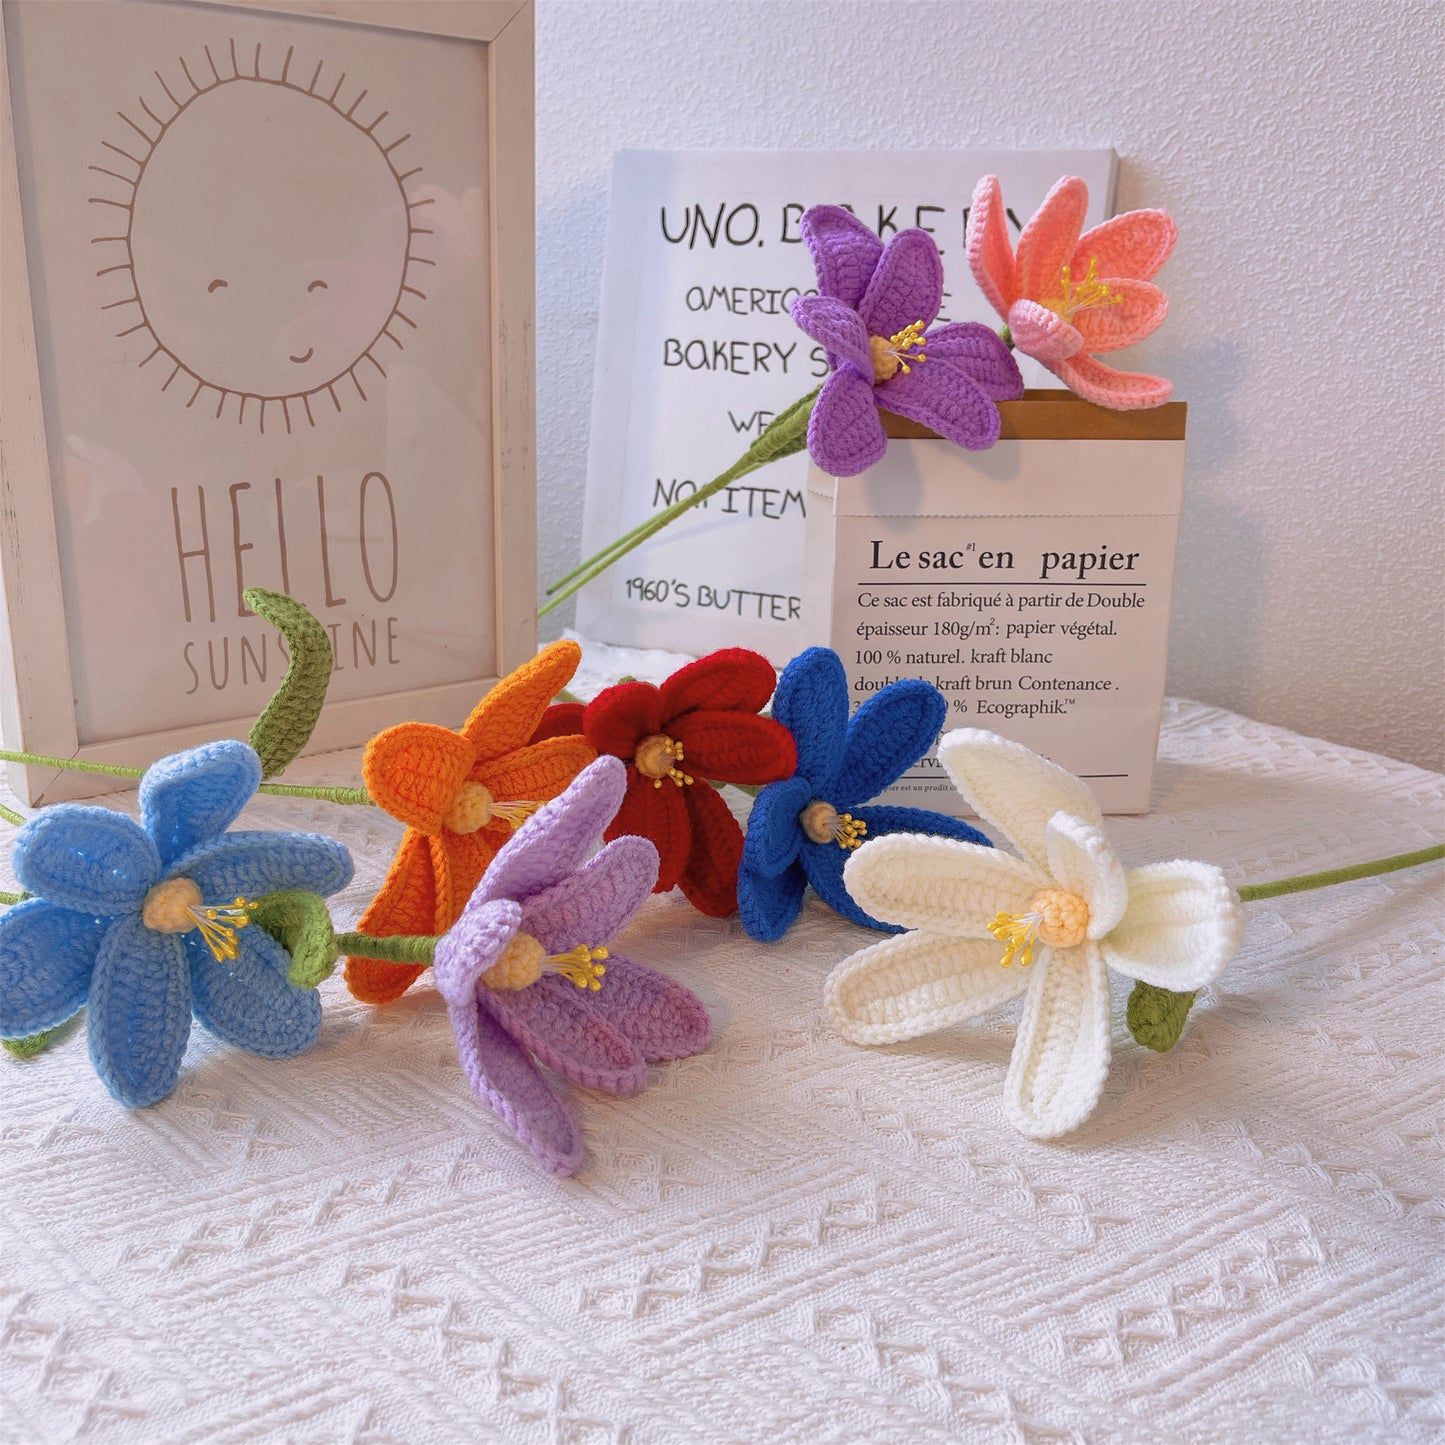 Handgefertigte gehäkelte Tulpenblumen – aus Garn gefertigt, Heimdekoration, Geschenkidee, Blumenarrangement, symbolische Blume, florale Akzente, Blumenstrauß